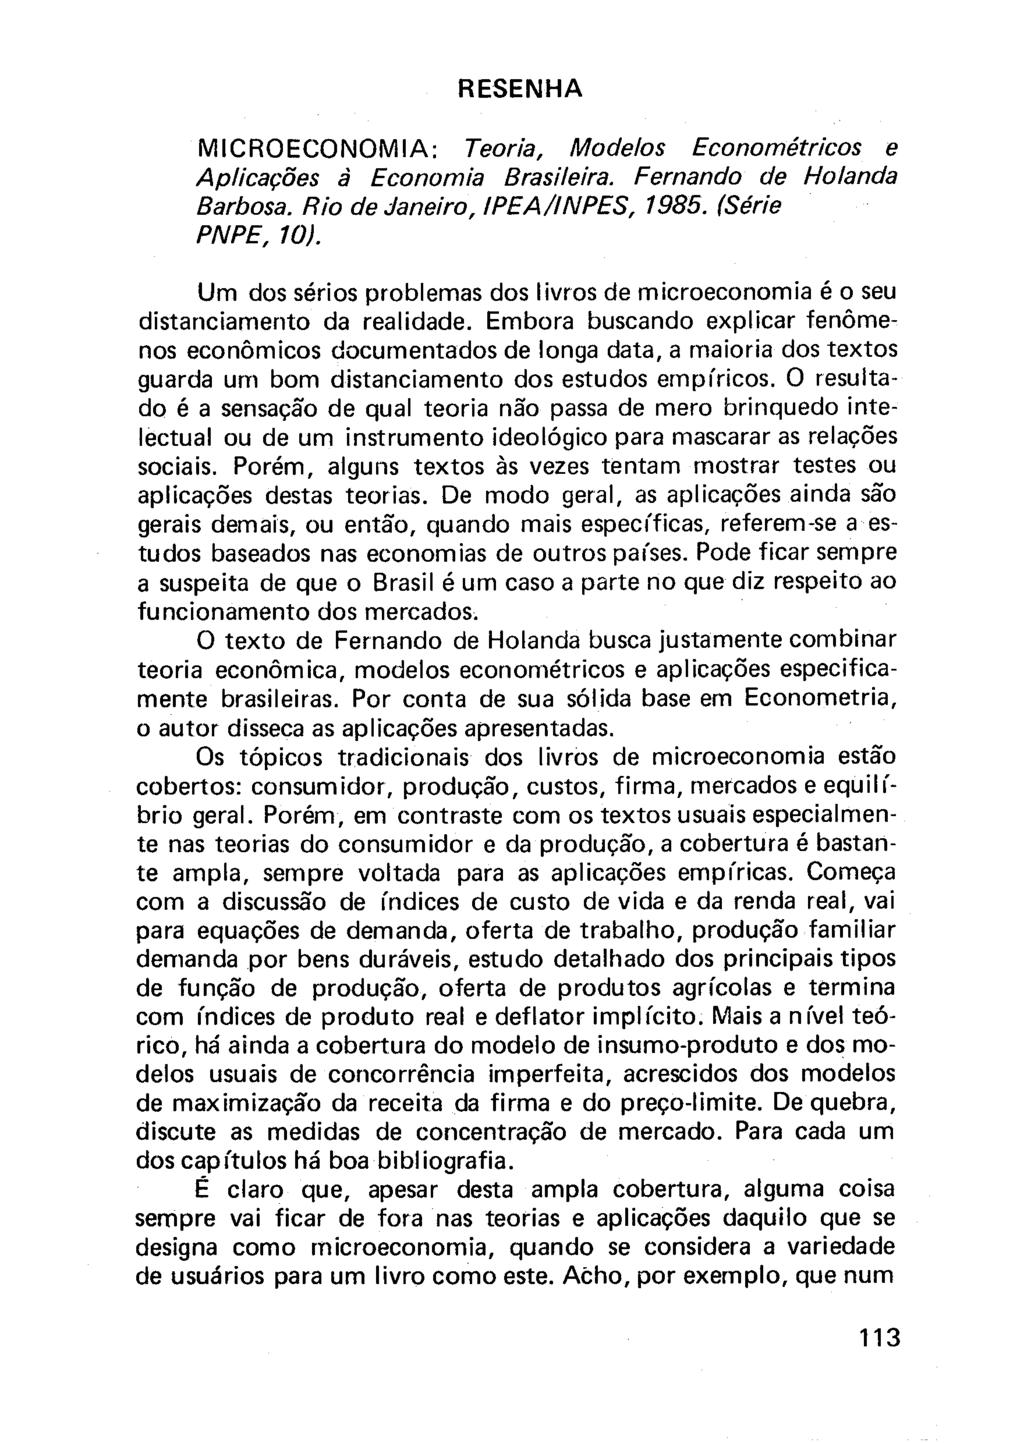 RESENHA MICROECONOMIA: Teoria, ñ^odelos Econométricos e Aplicações à Economia Brasileira. Fernando de Holanda Barbosa. Rio de Janeiro, IPEA/INPES, 1985. (Série PNPE, 10).